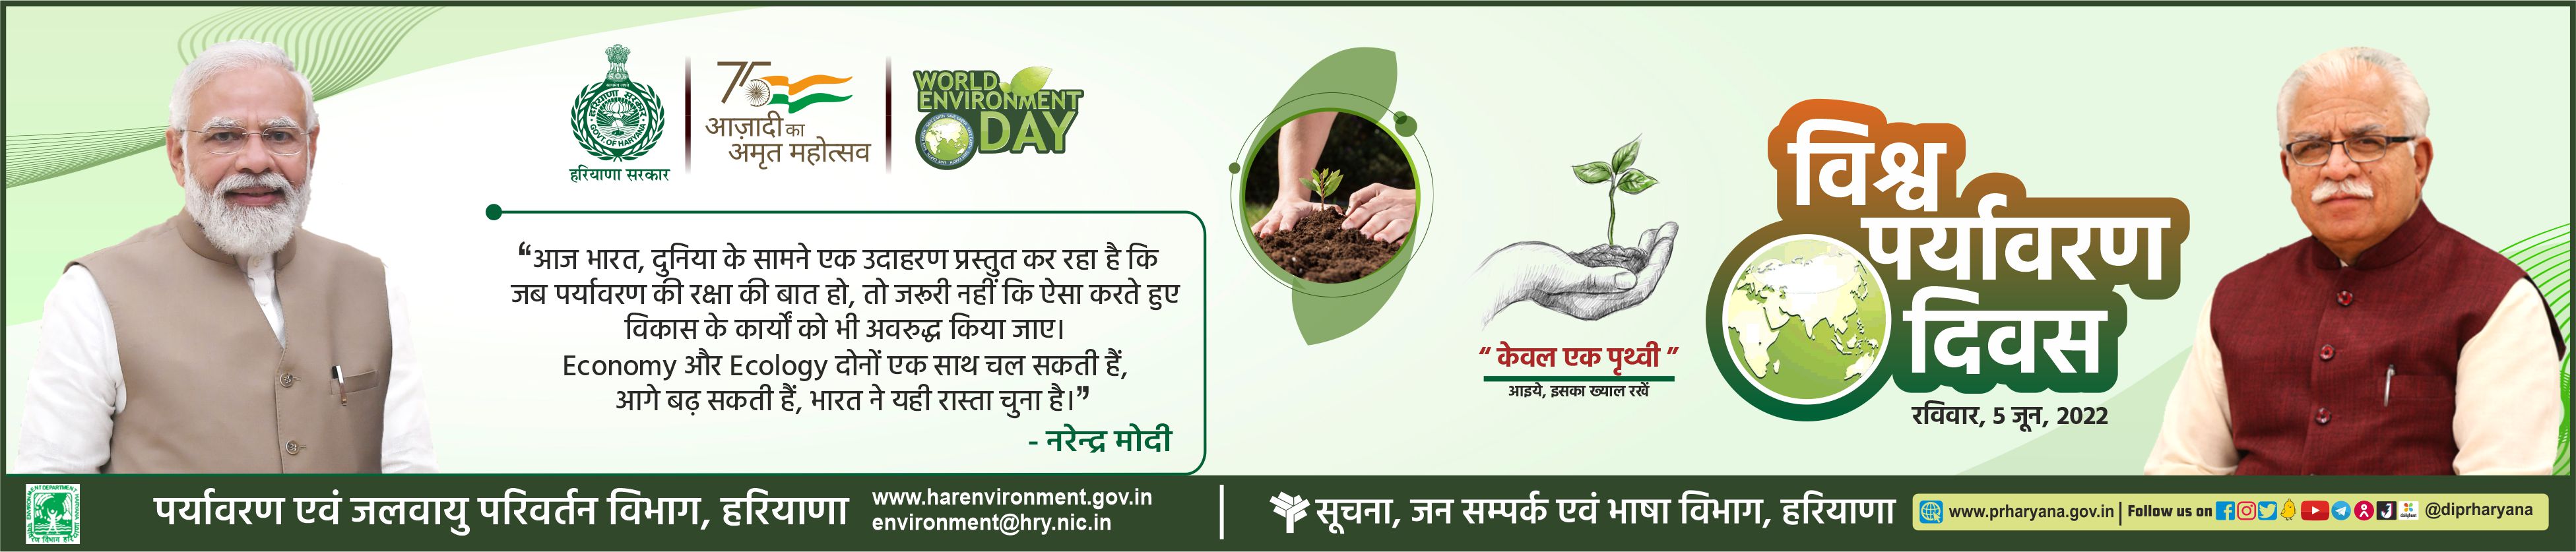 Environment Day Hindi 4